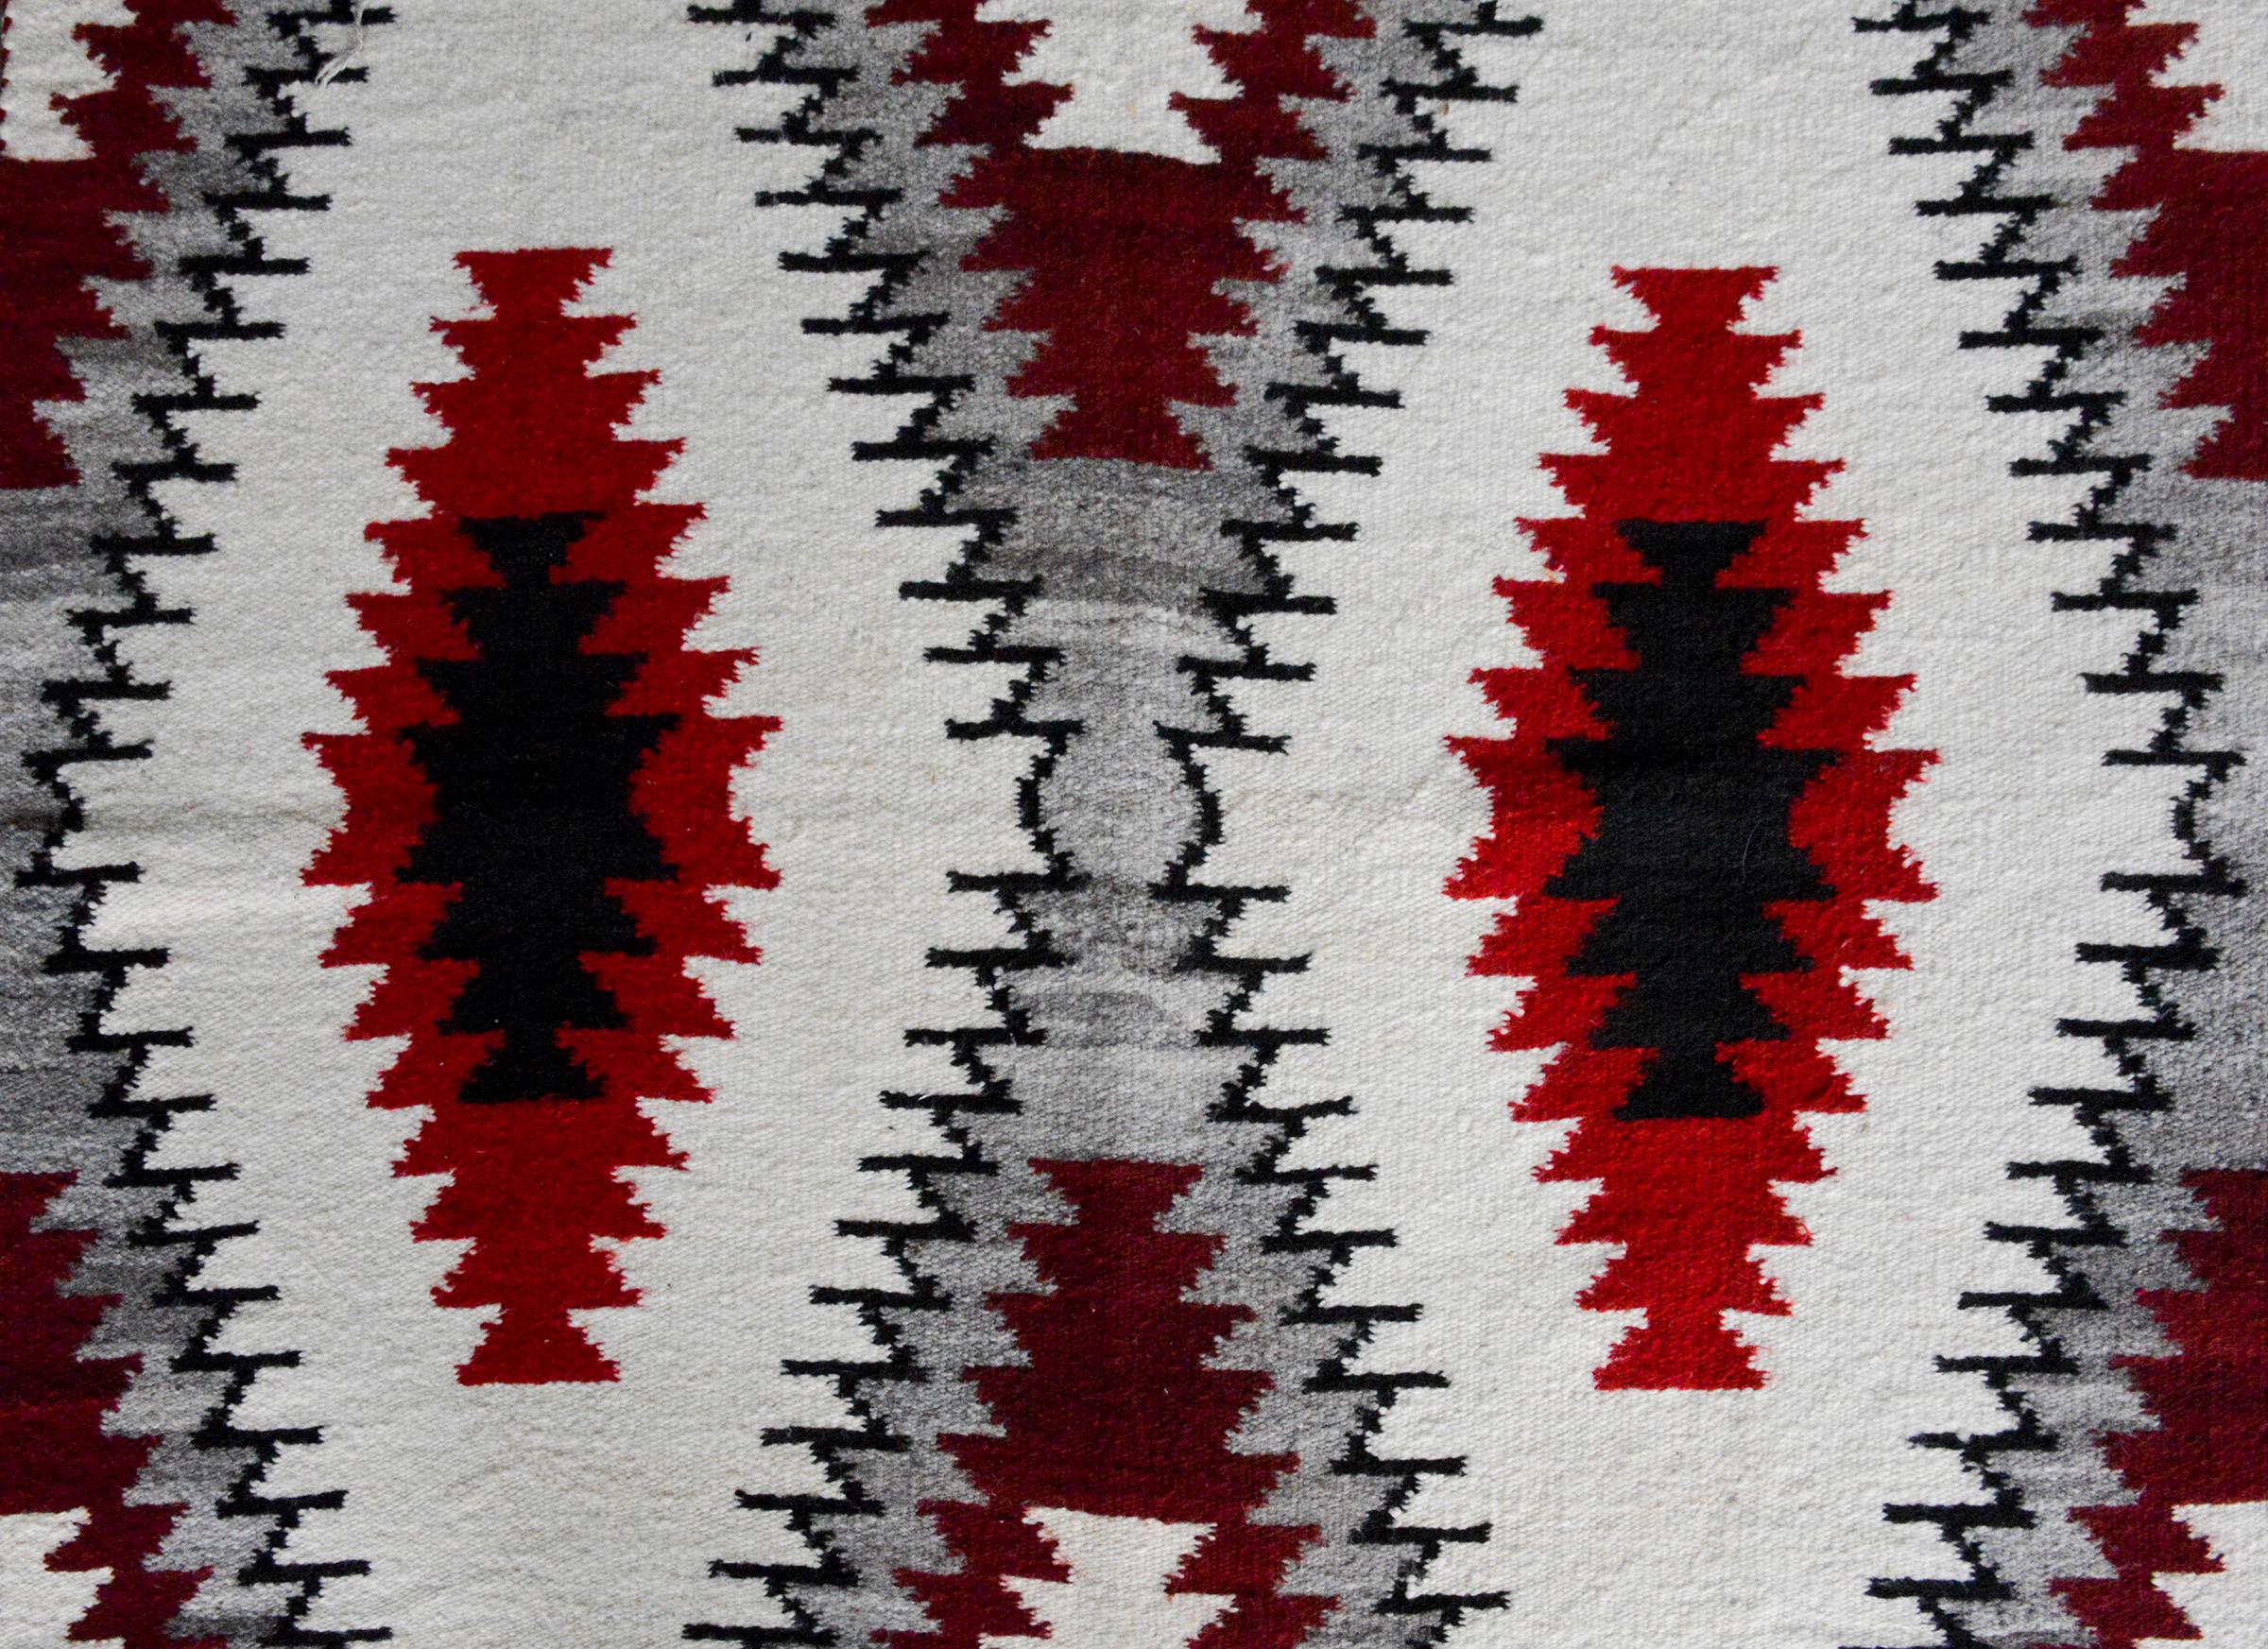 Remarquable couverture Navajo du début du XXe siècle avec un audacieux motif de losanges tissé en laine cramoisie, blanche, grise et noire.